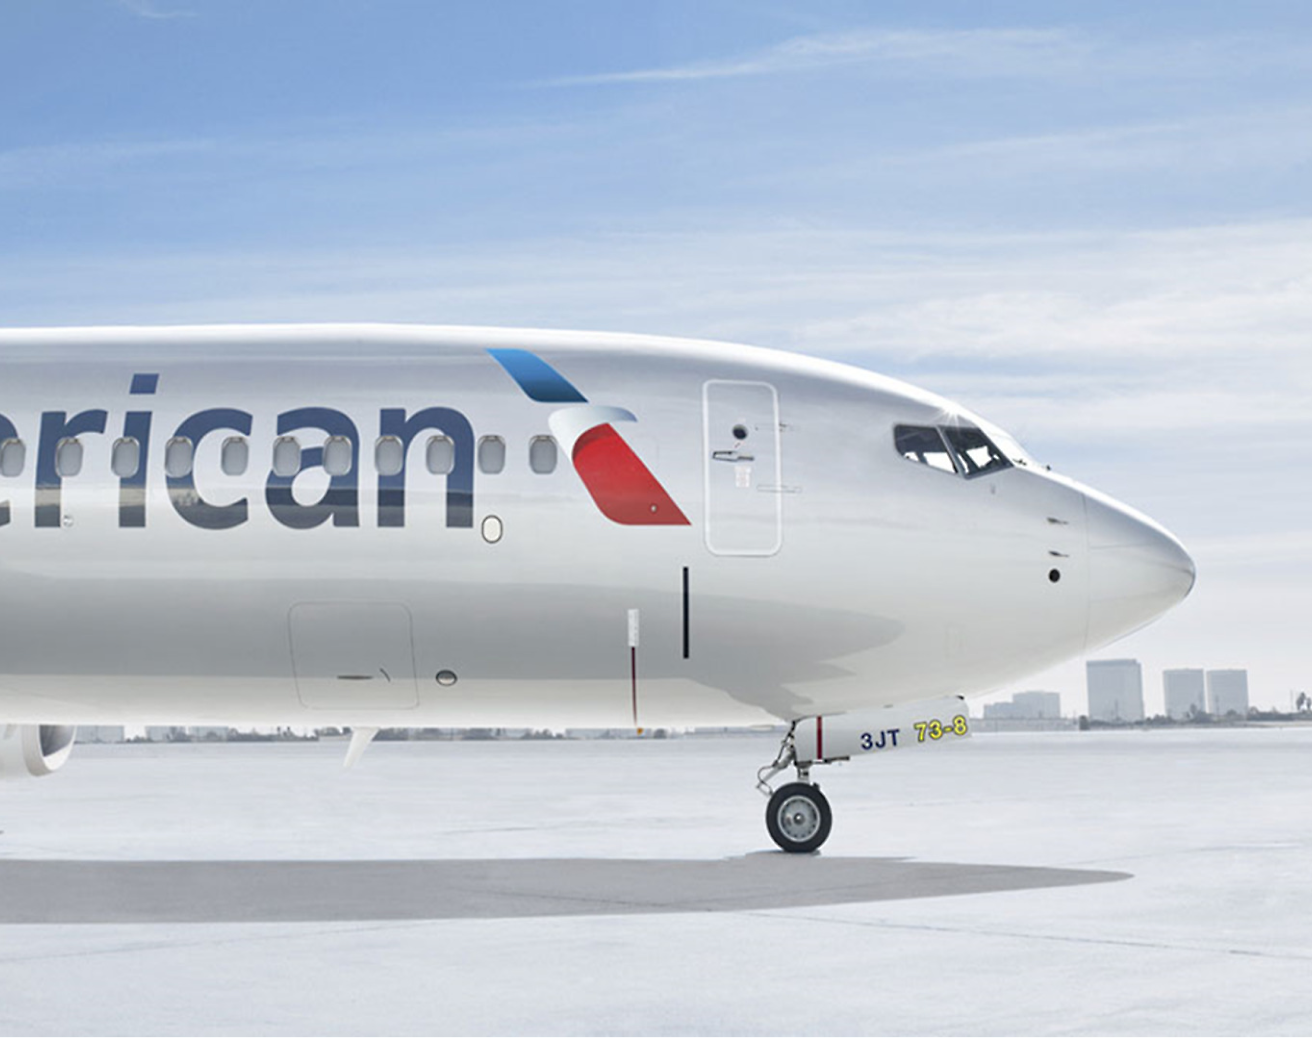 Vista frontal de un avión de American Airlines aparcado en la pista bajo un cielo despejado.